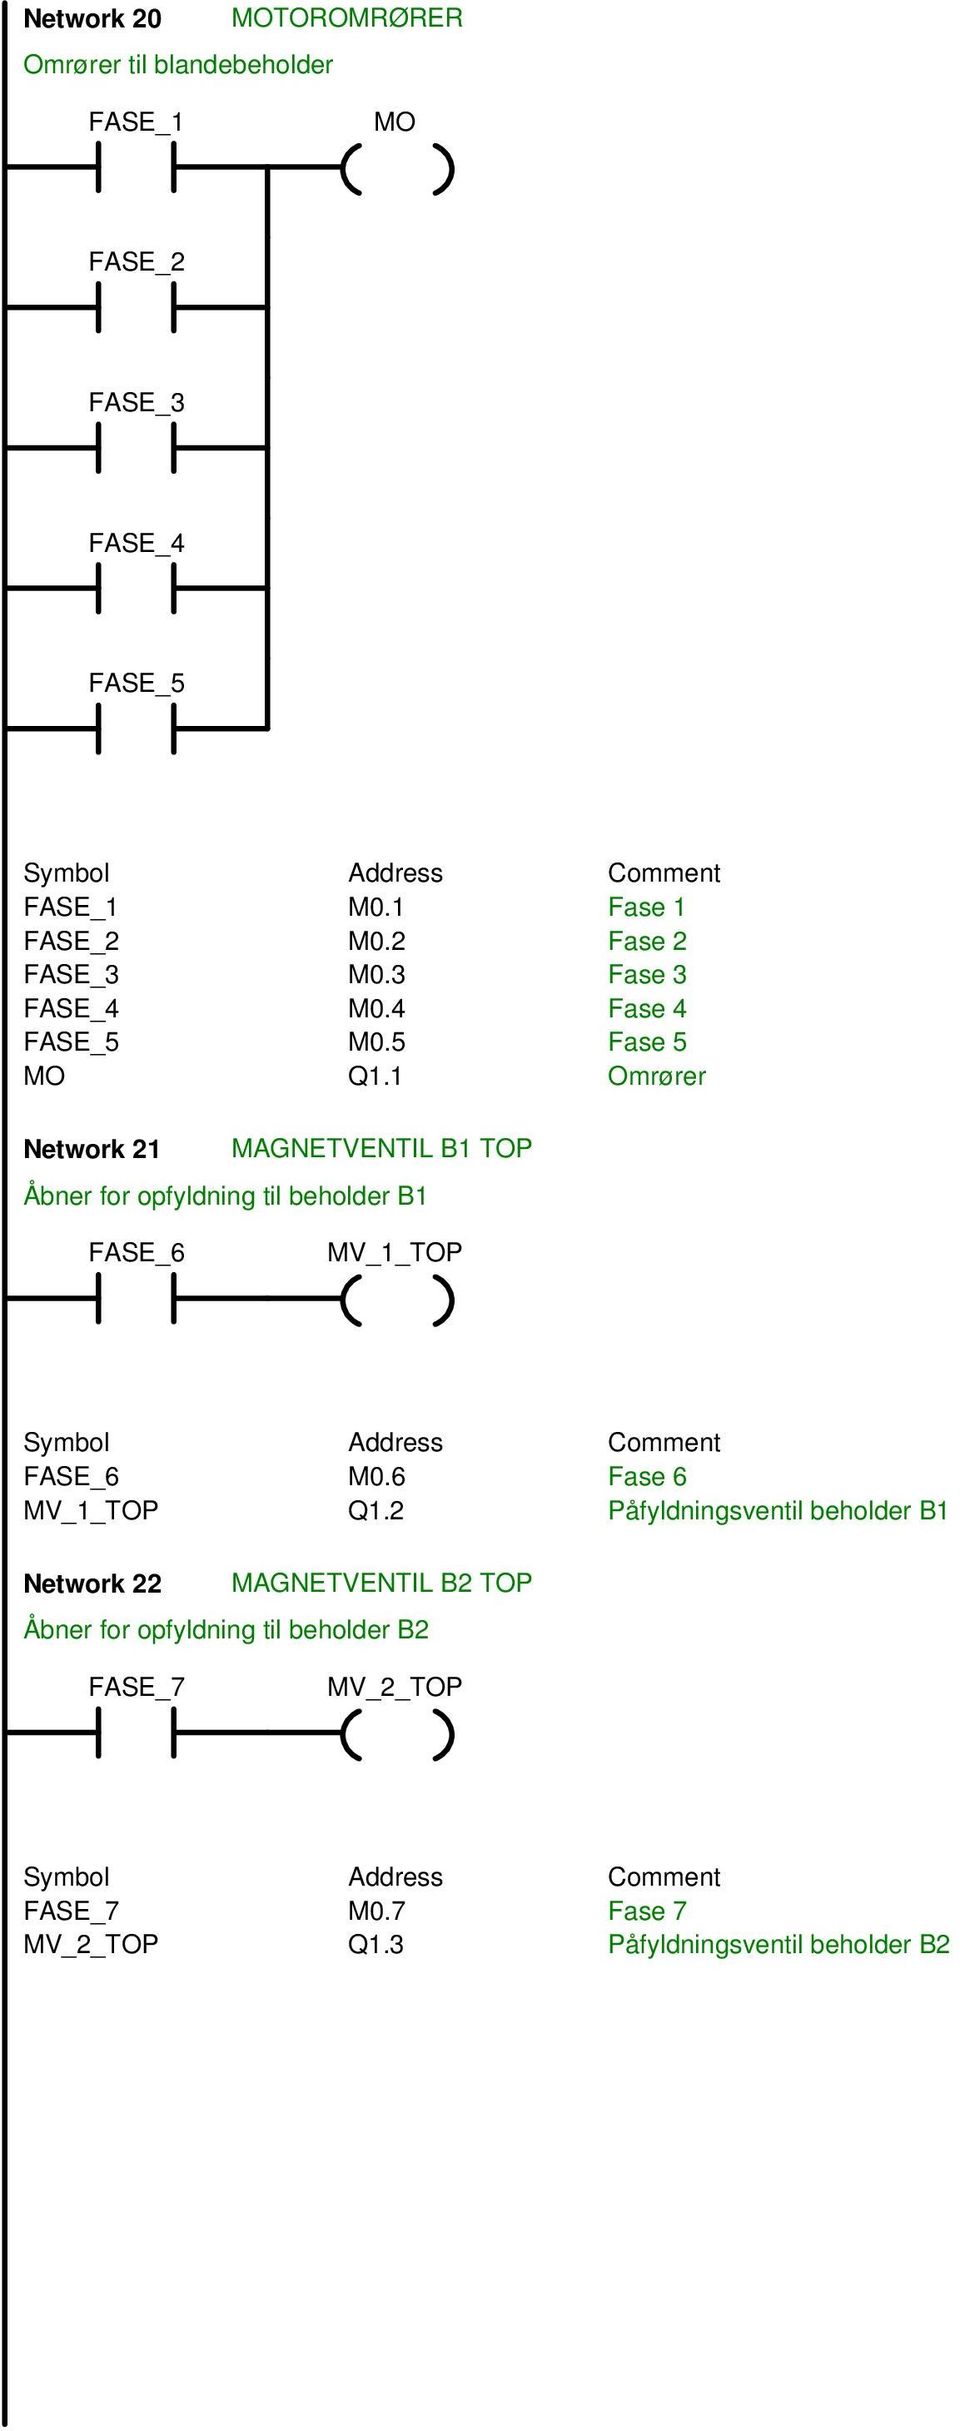 1 Omrører Network 21 MAGNETVENTIL B1 TOP Åbner for opfyldning til beholder B1 FASE_6 MV_1_TOP FASE_6 M0.